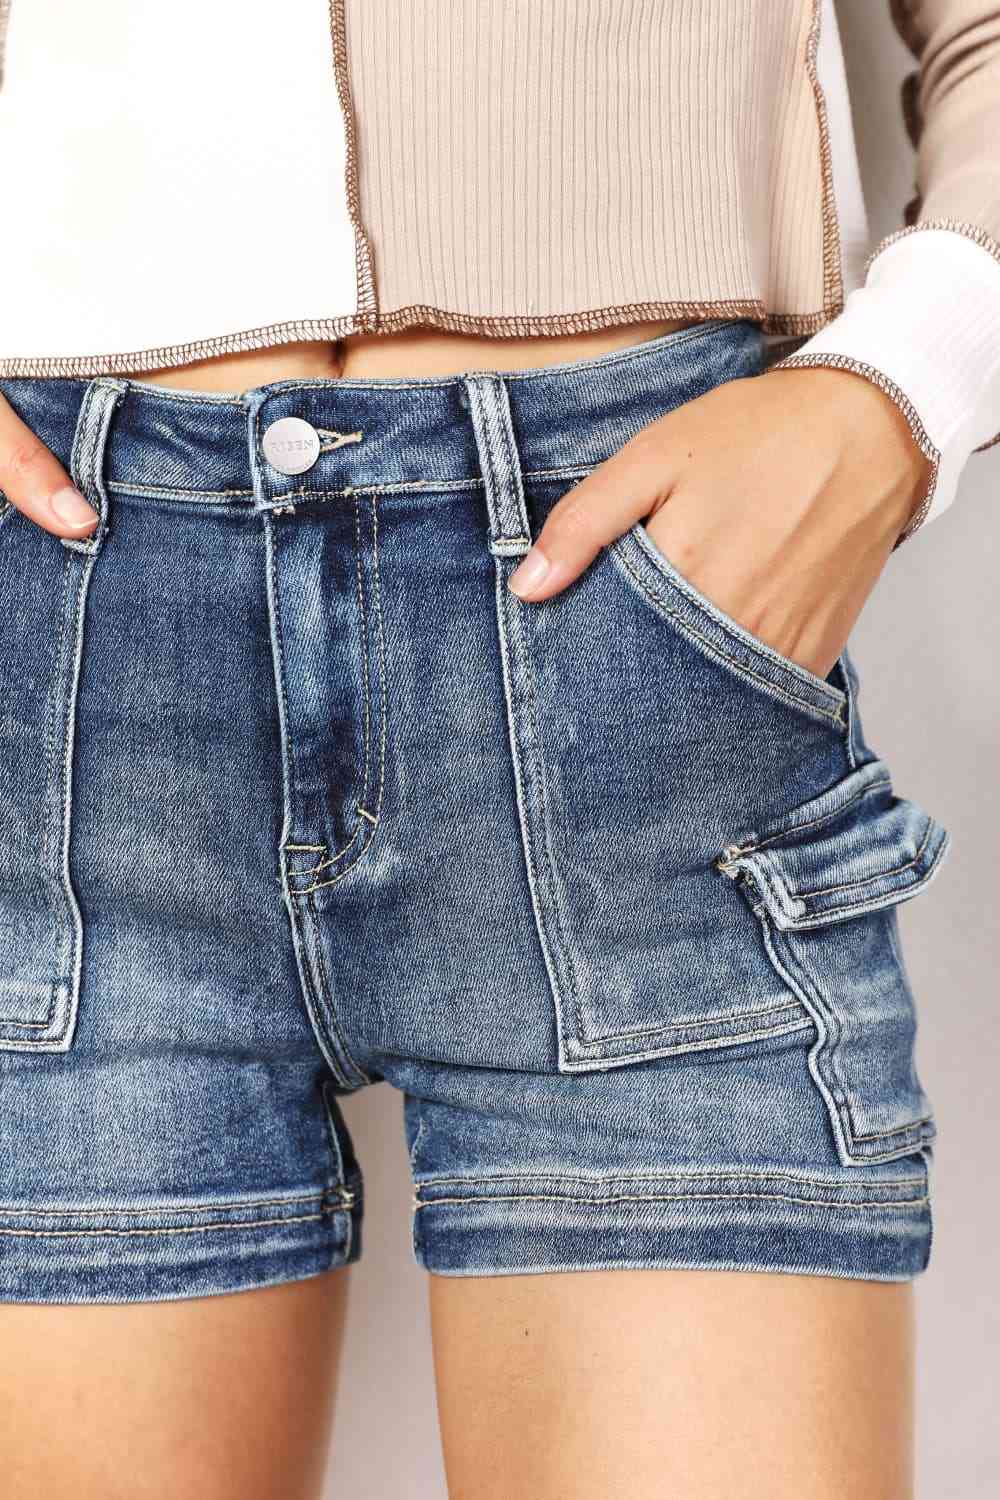 RISEN Shorts con bolsillo cargo lateral de talle alto y tamaño completo